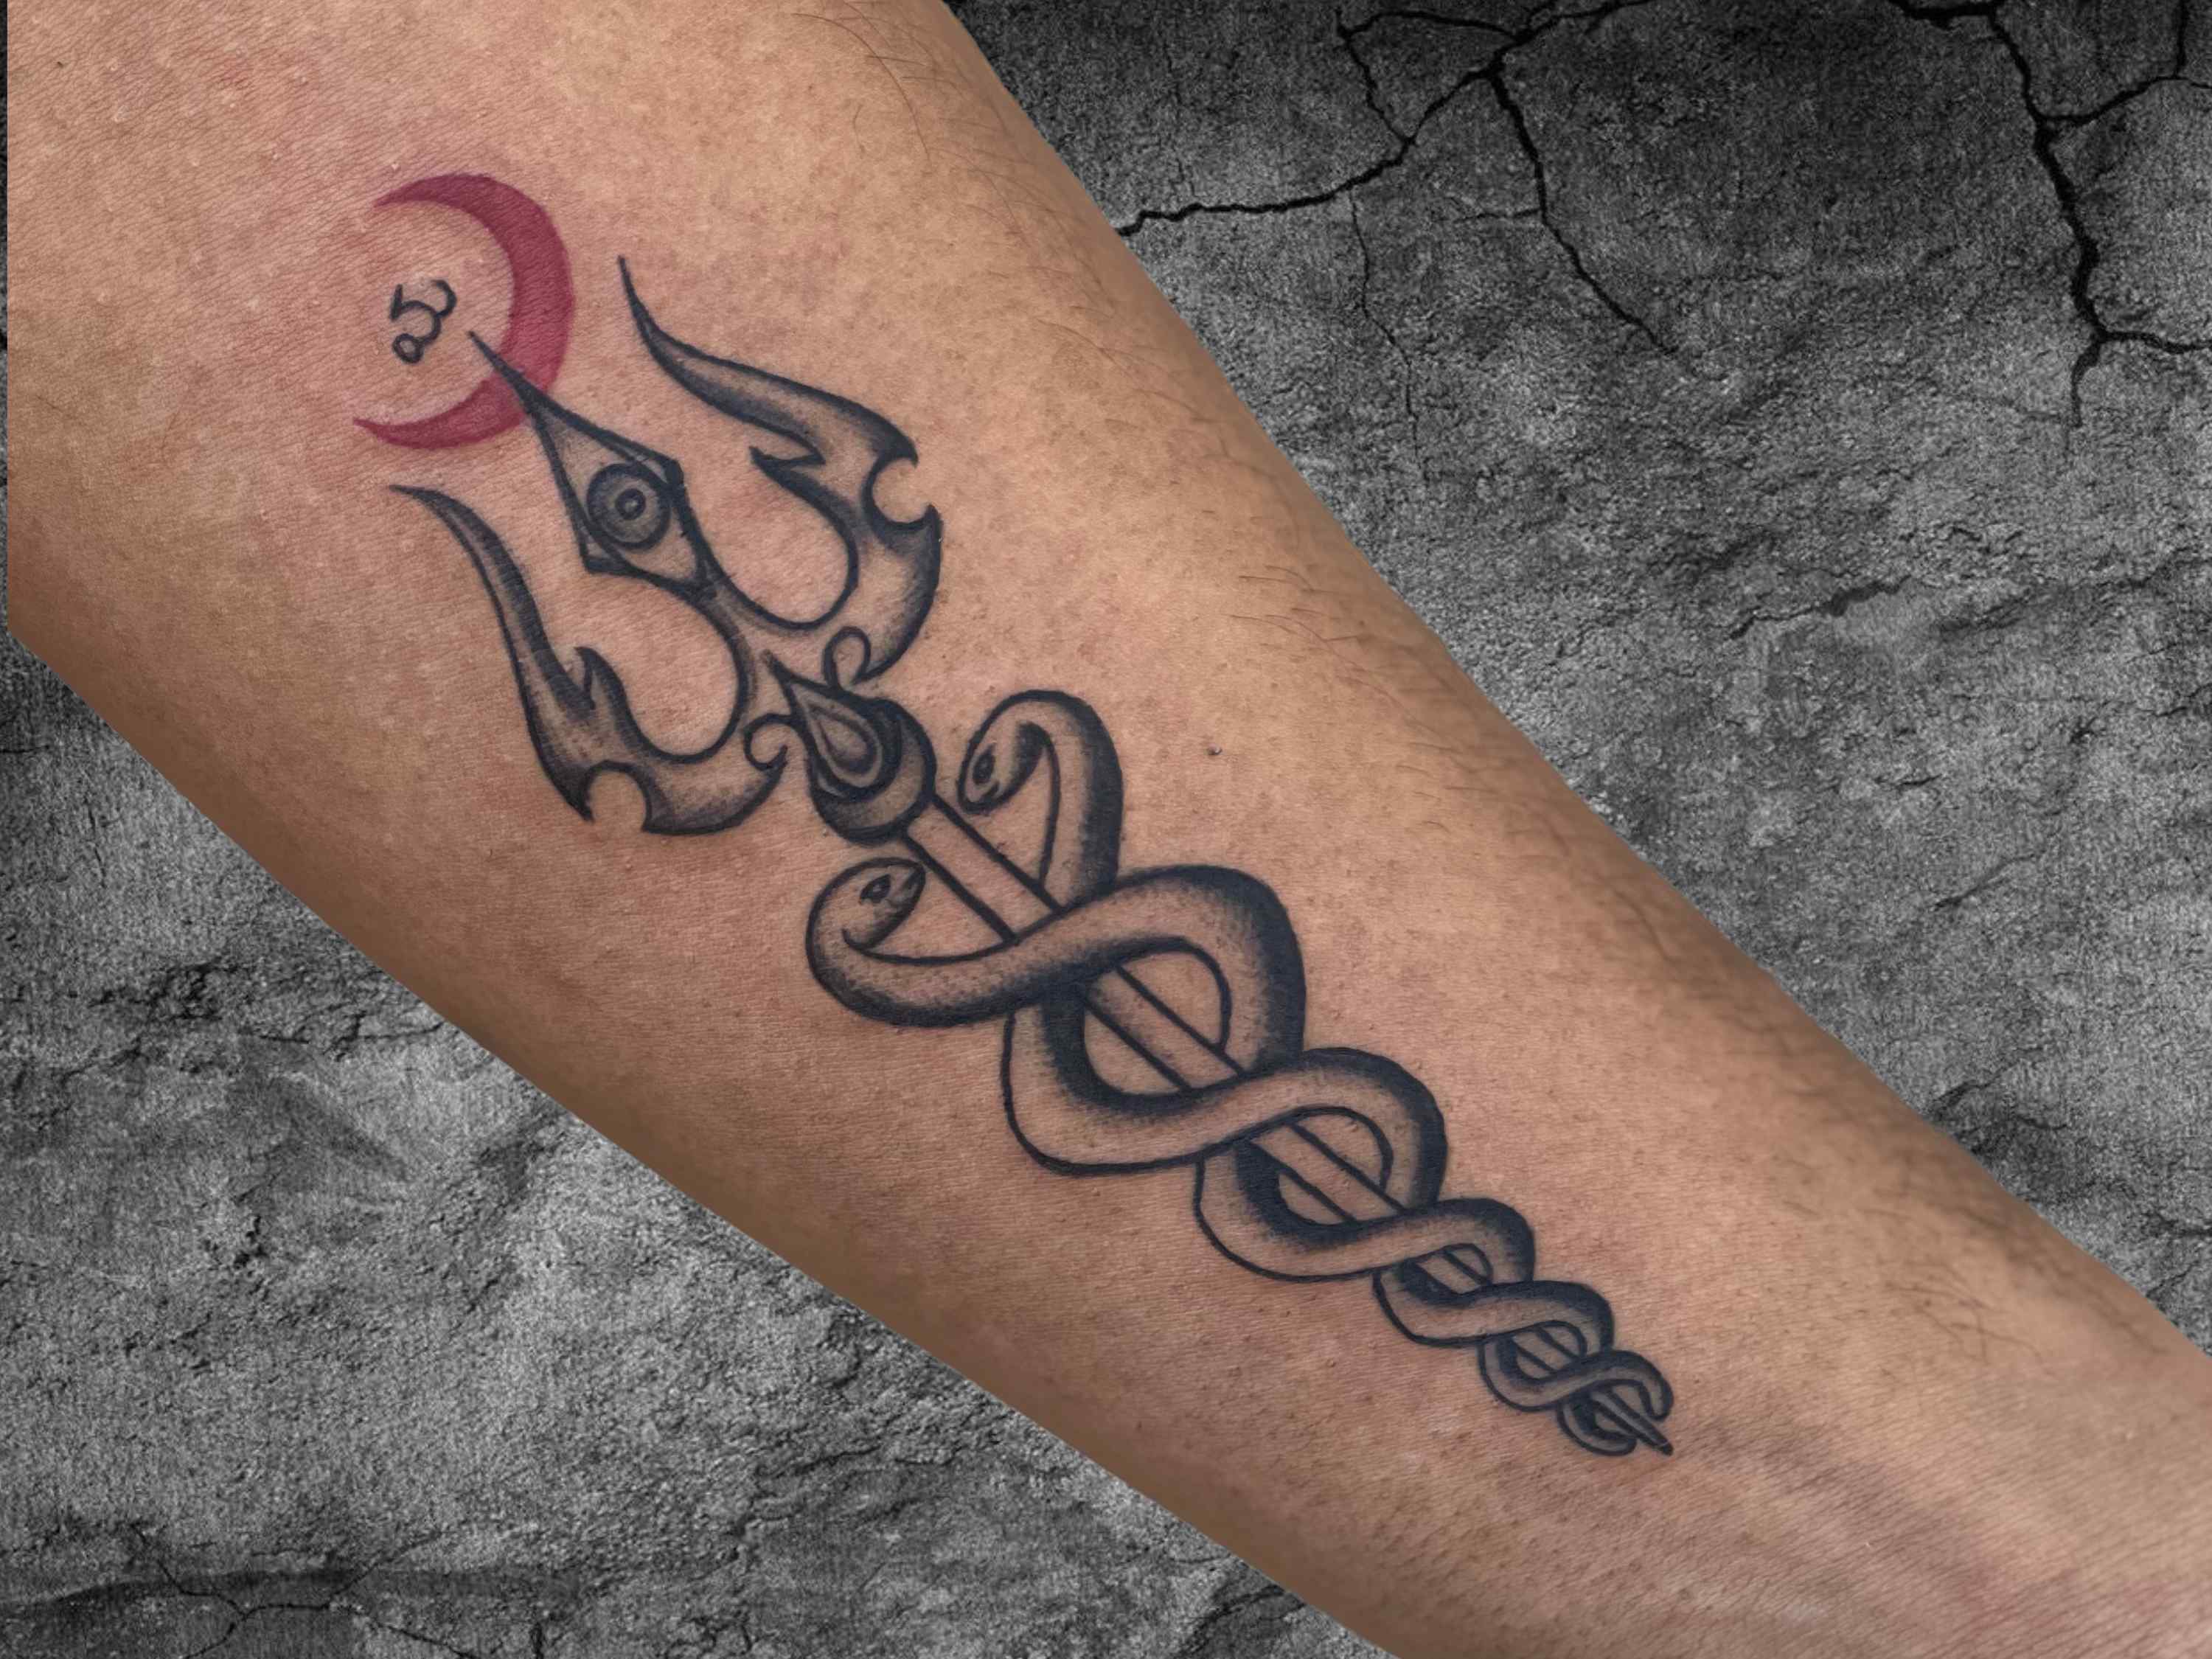 Trishul tattoo by Parth Vasani at Aliens Tattoo India :: Behance